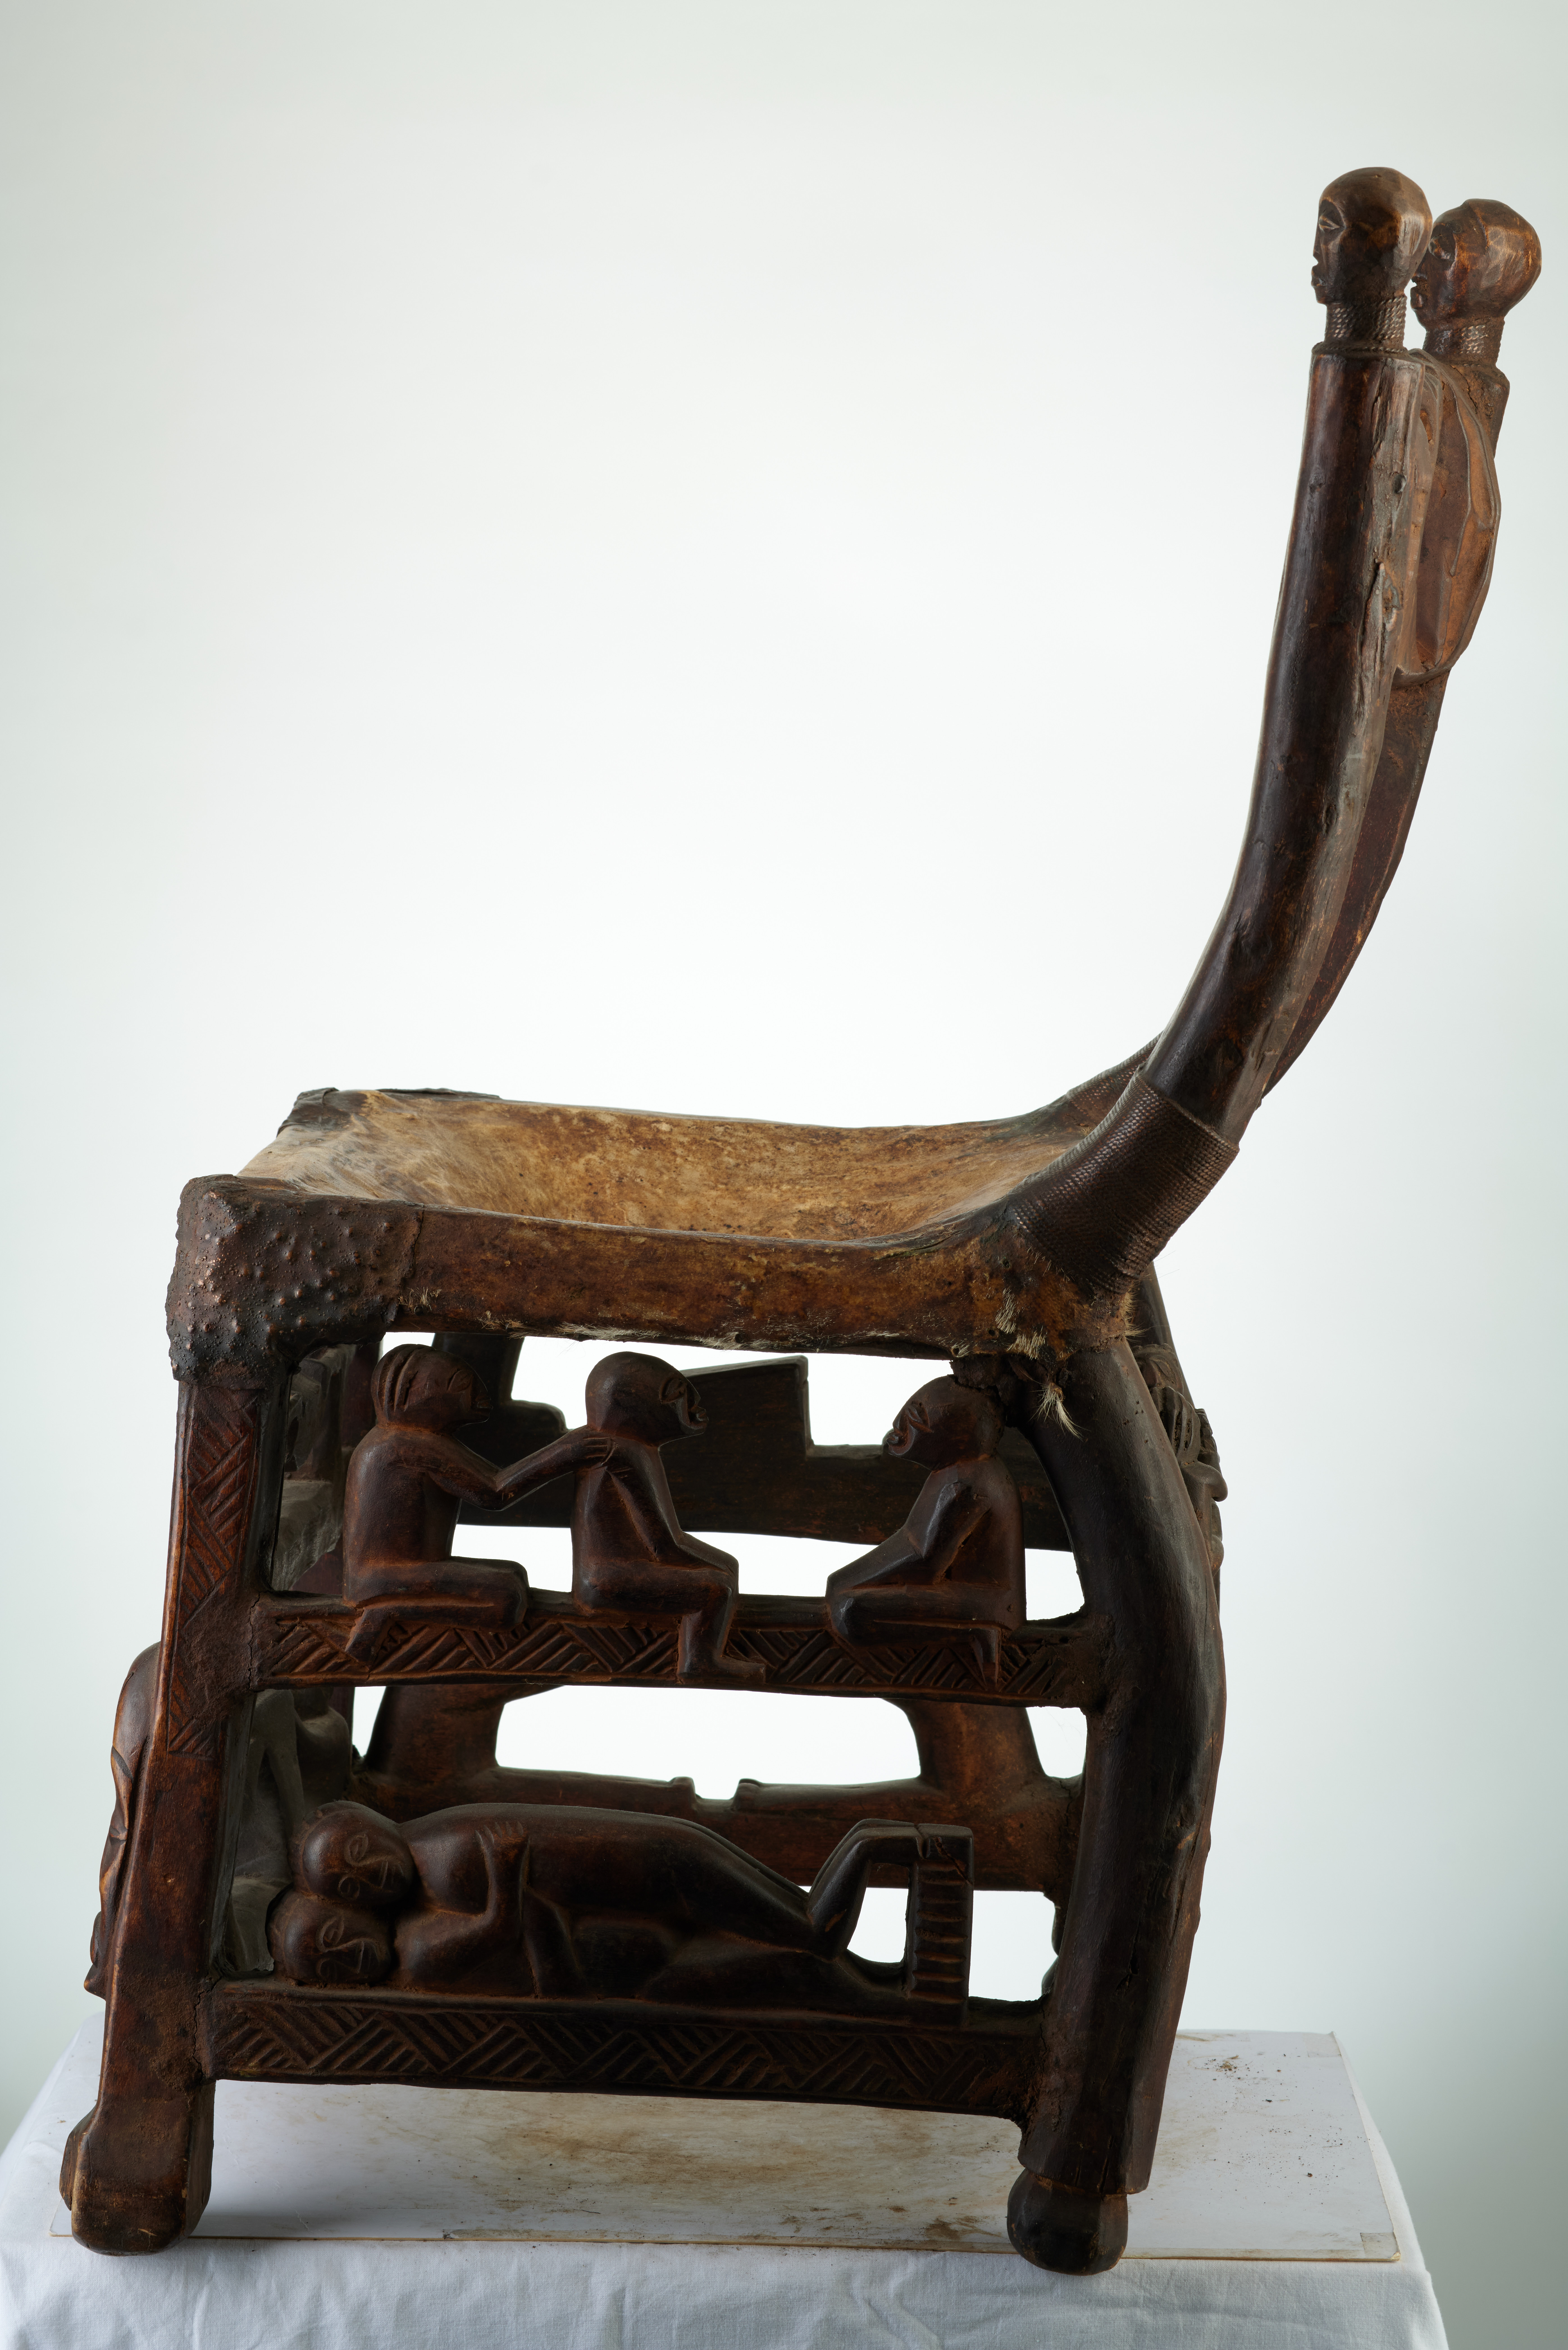 TCHOKWE (chaise), d`afrique : rep.dem.Congo, statuette TCHOKWE (chaise), masque ancien africain TCHOKWE (chaise), art du rep.dem.Congo - Art Africain, collection privées Belgique. Statue africaine de la tribu des TCHOKWE (chaise), provenant du rep.dem.Congo, 1869:Tres vieille chaise Tchokwe datant du 19eme sc.Elle est recouverte d